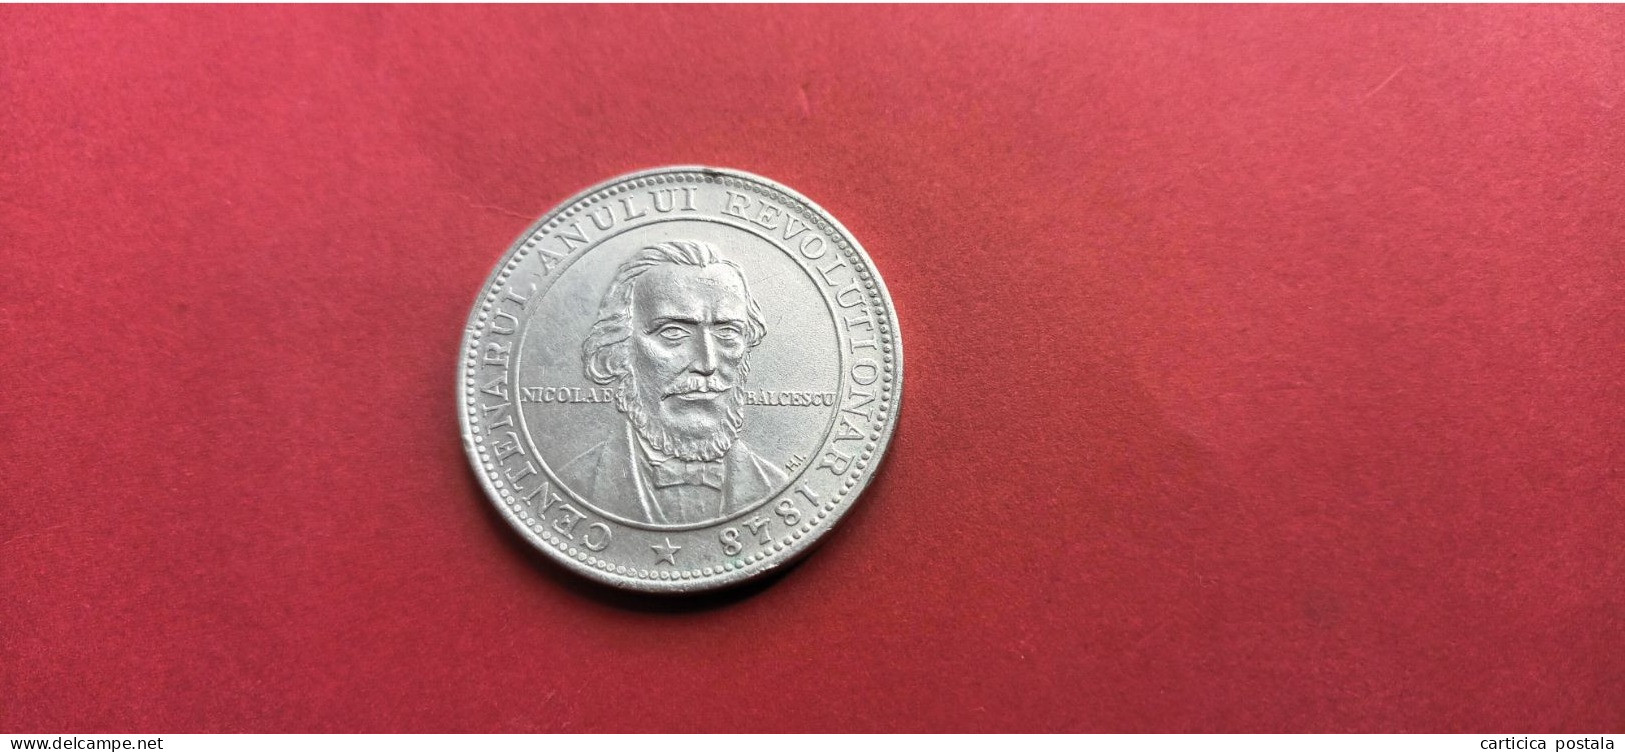 Romania Rumanien Moneda / Medalie Argint N Balcescu1948 - Rumania